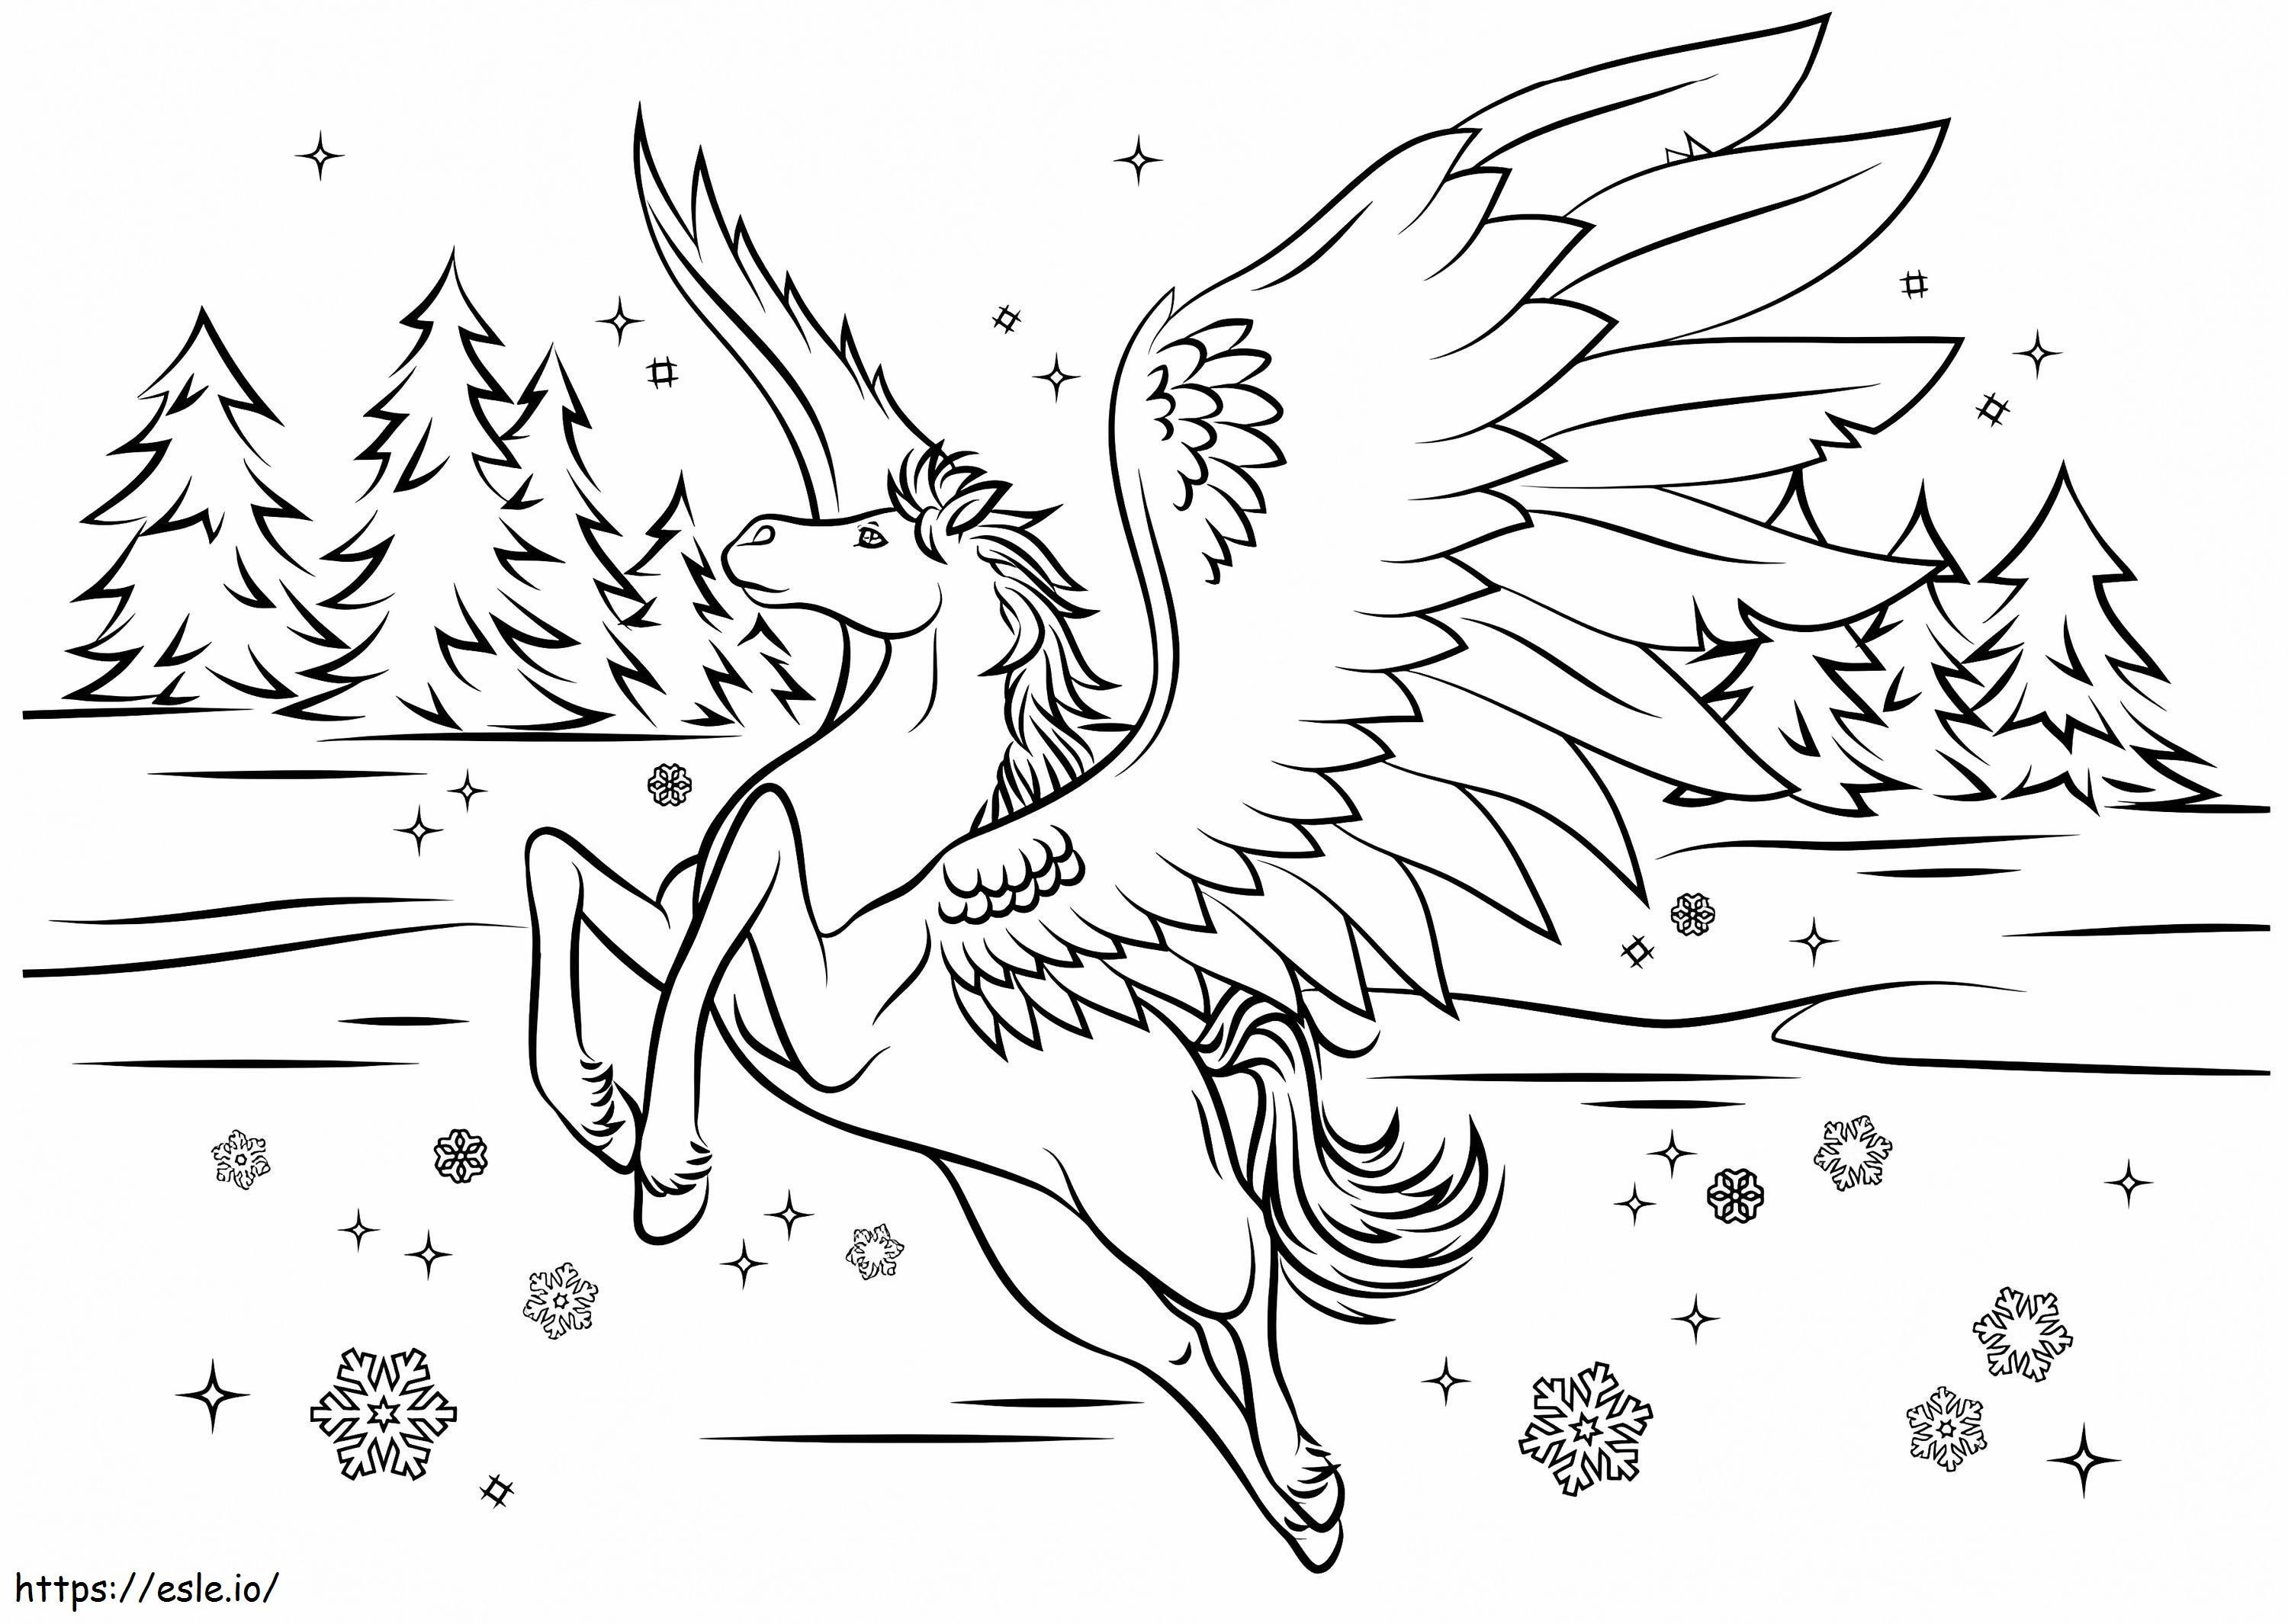  Pegasus în iarnă A4 de colorat